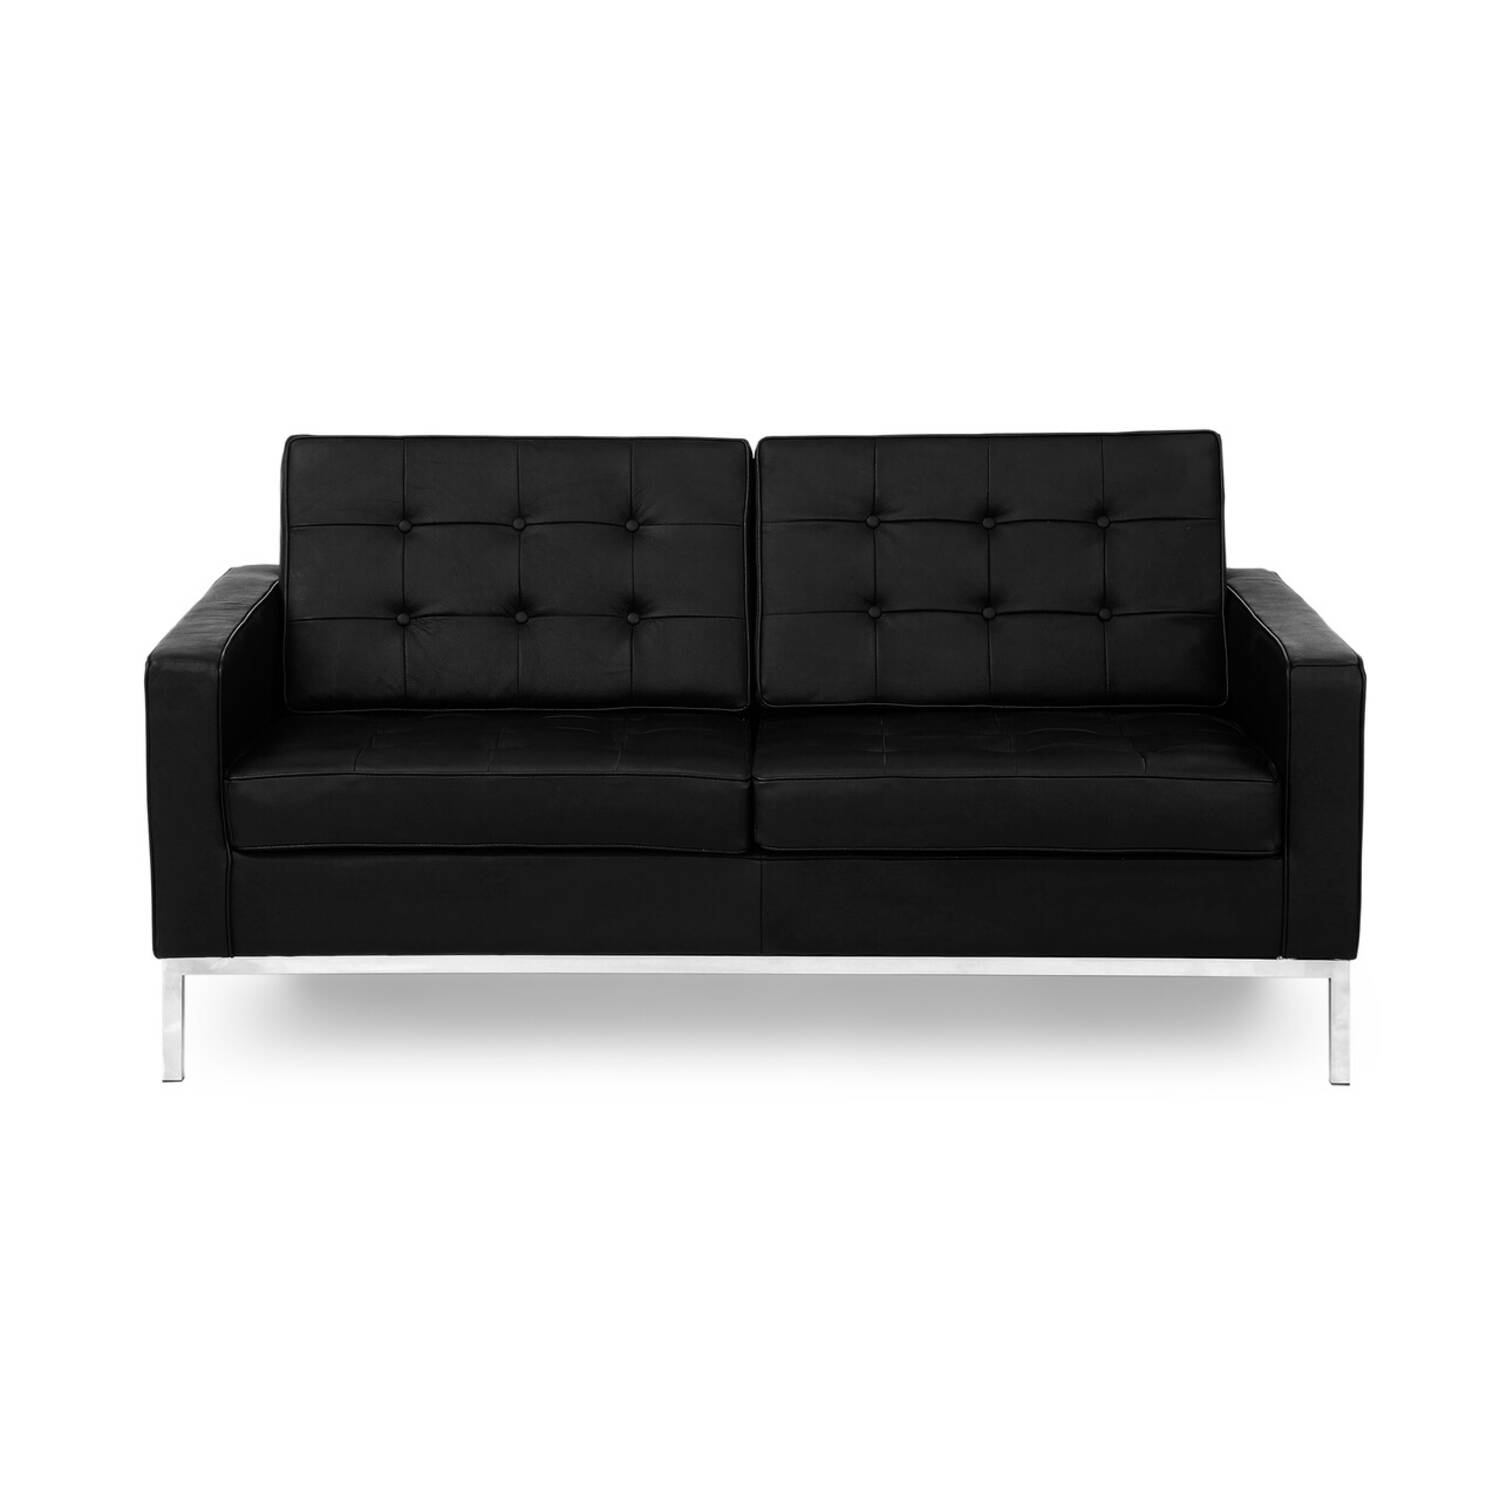 Черный двухместный диван Florence, экокожа